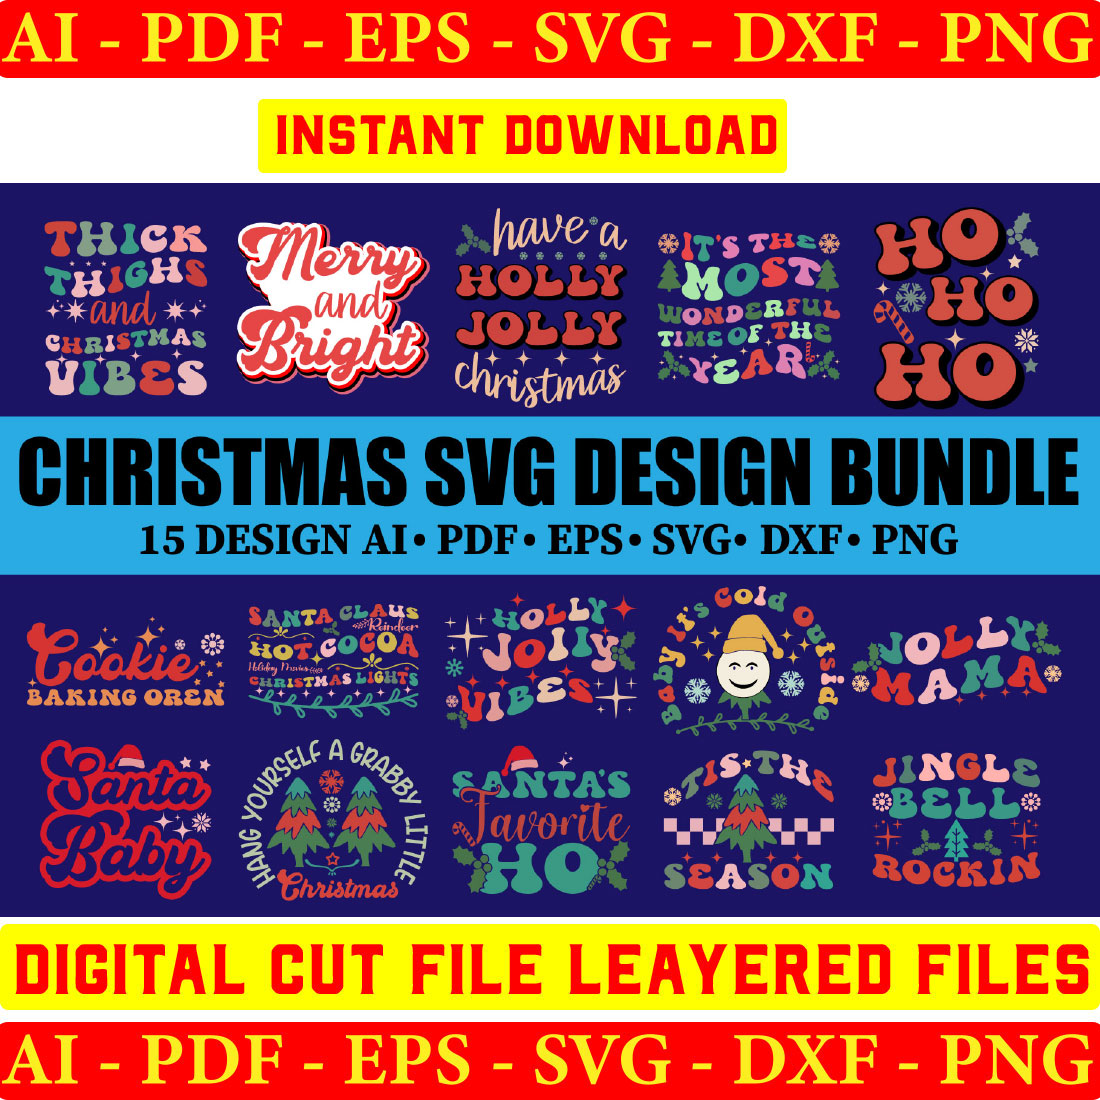 Christmas Retro Svg Bundle, Retro Christmas Designs, Retro Christmas Shirt, Christmas Clipart, Retro Christmas Shirt, Christmas Svg Retro cover image.